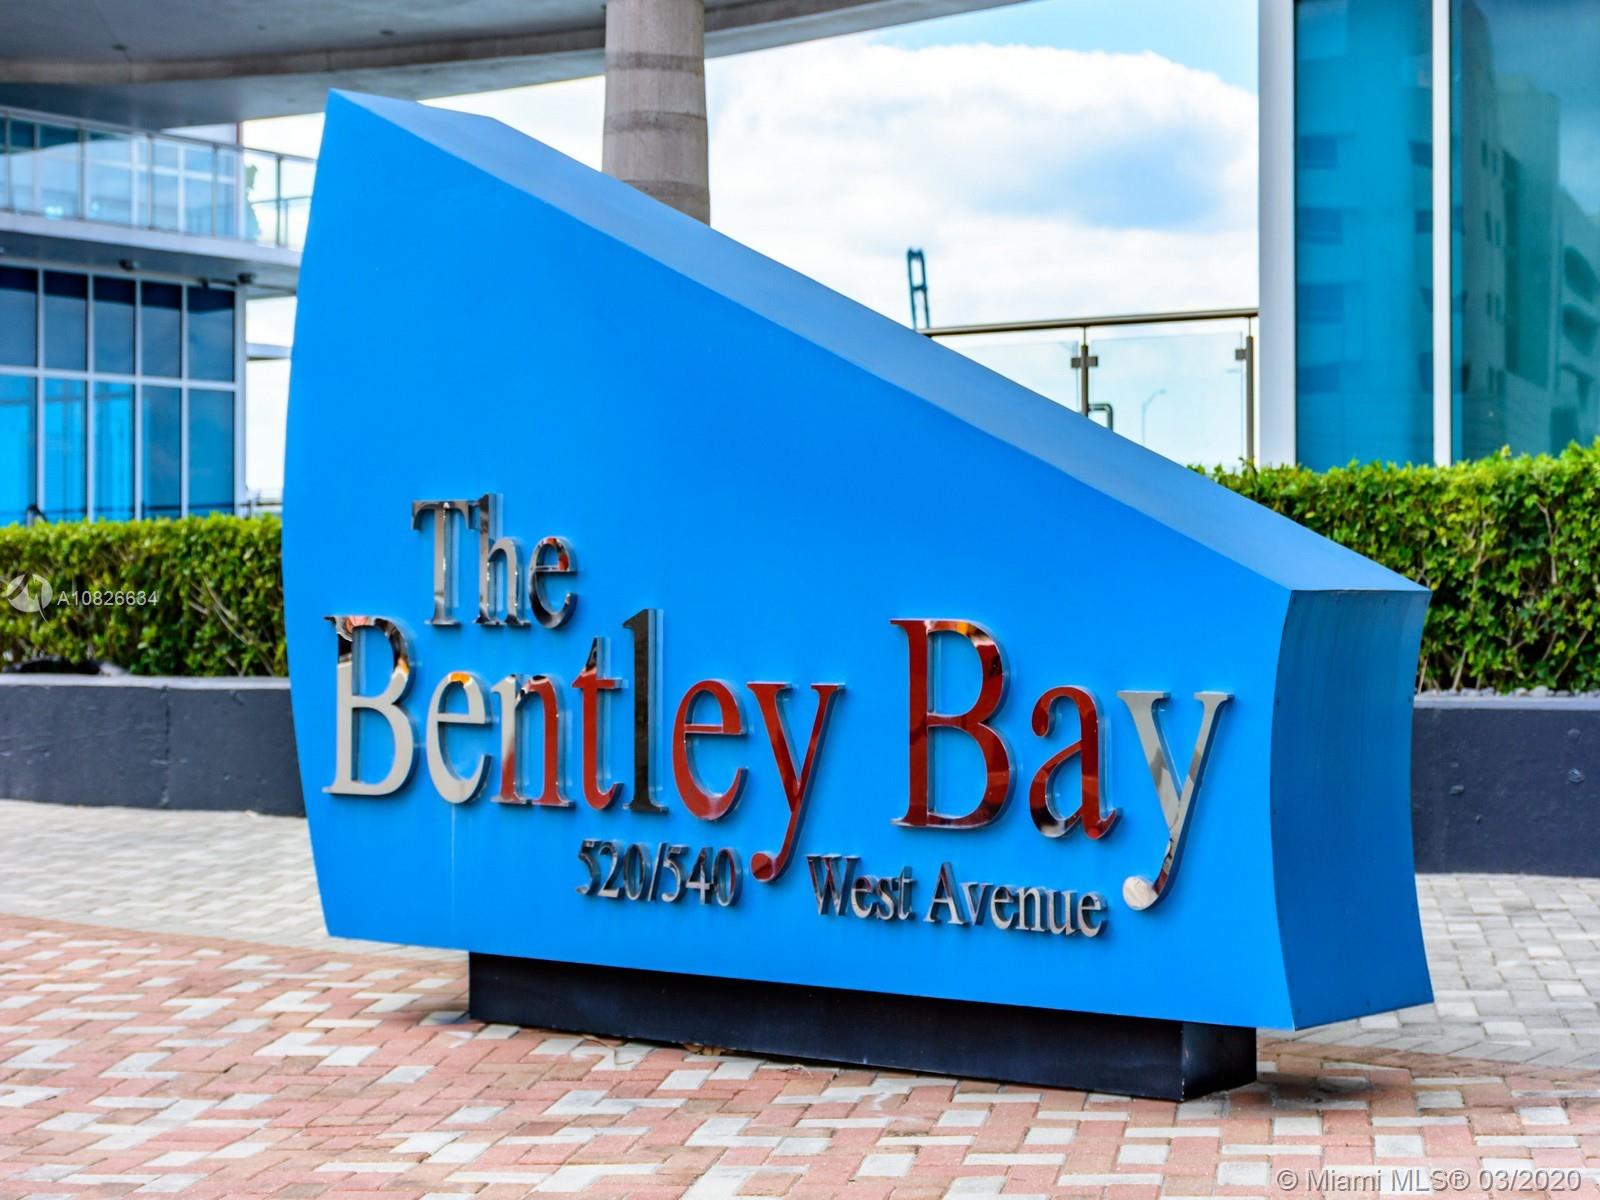 Bentley Bay image #2